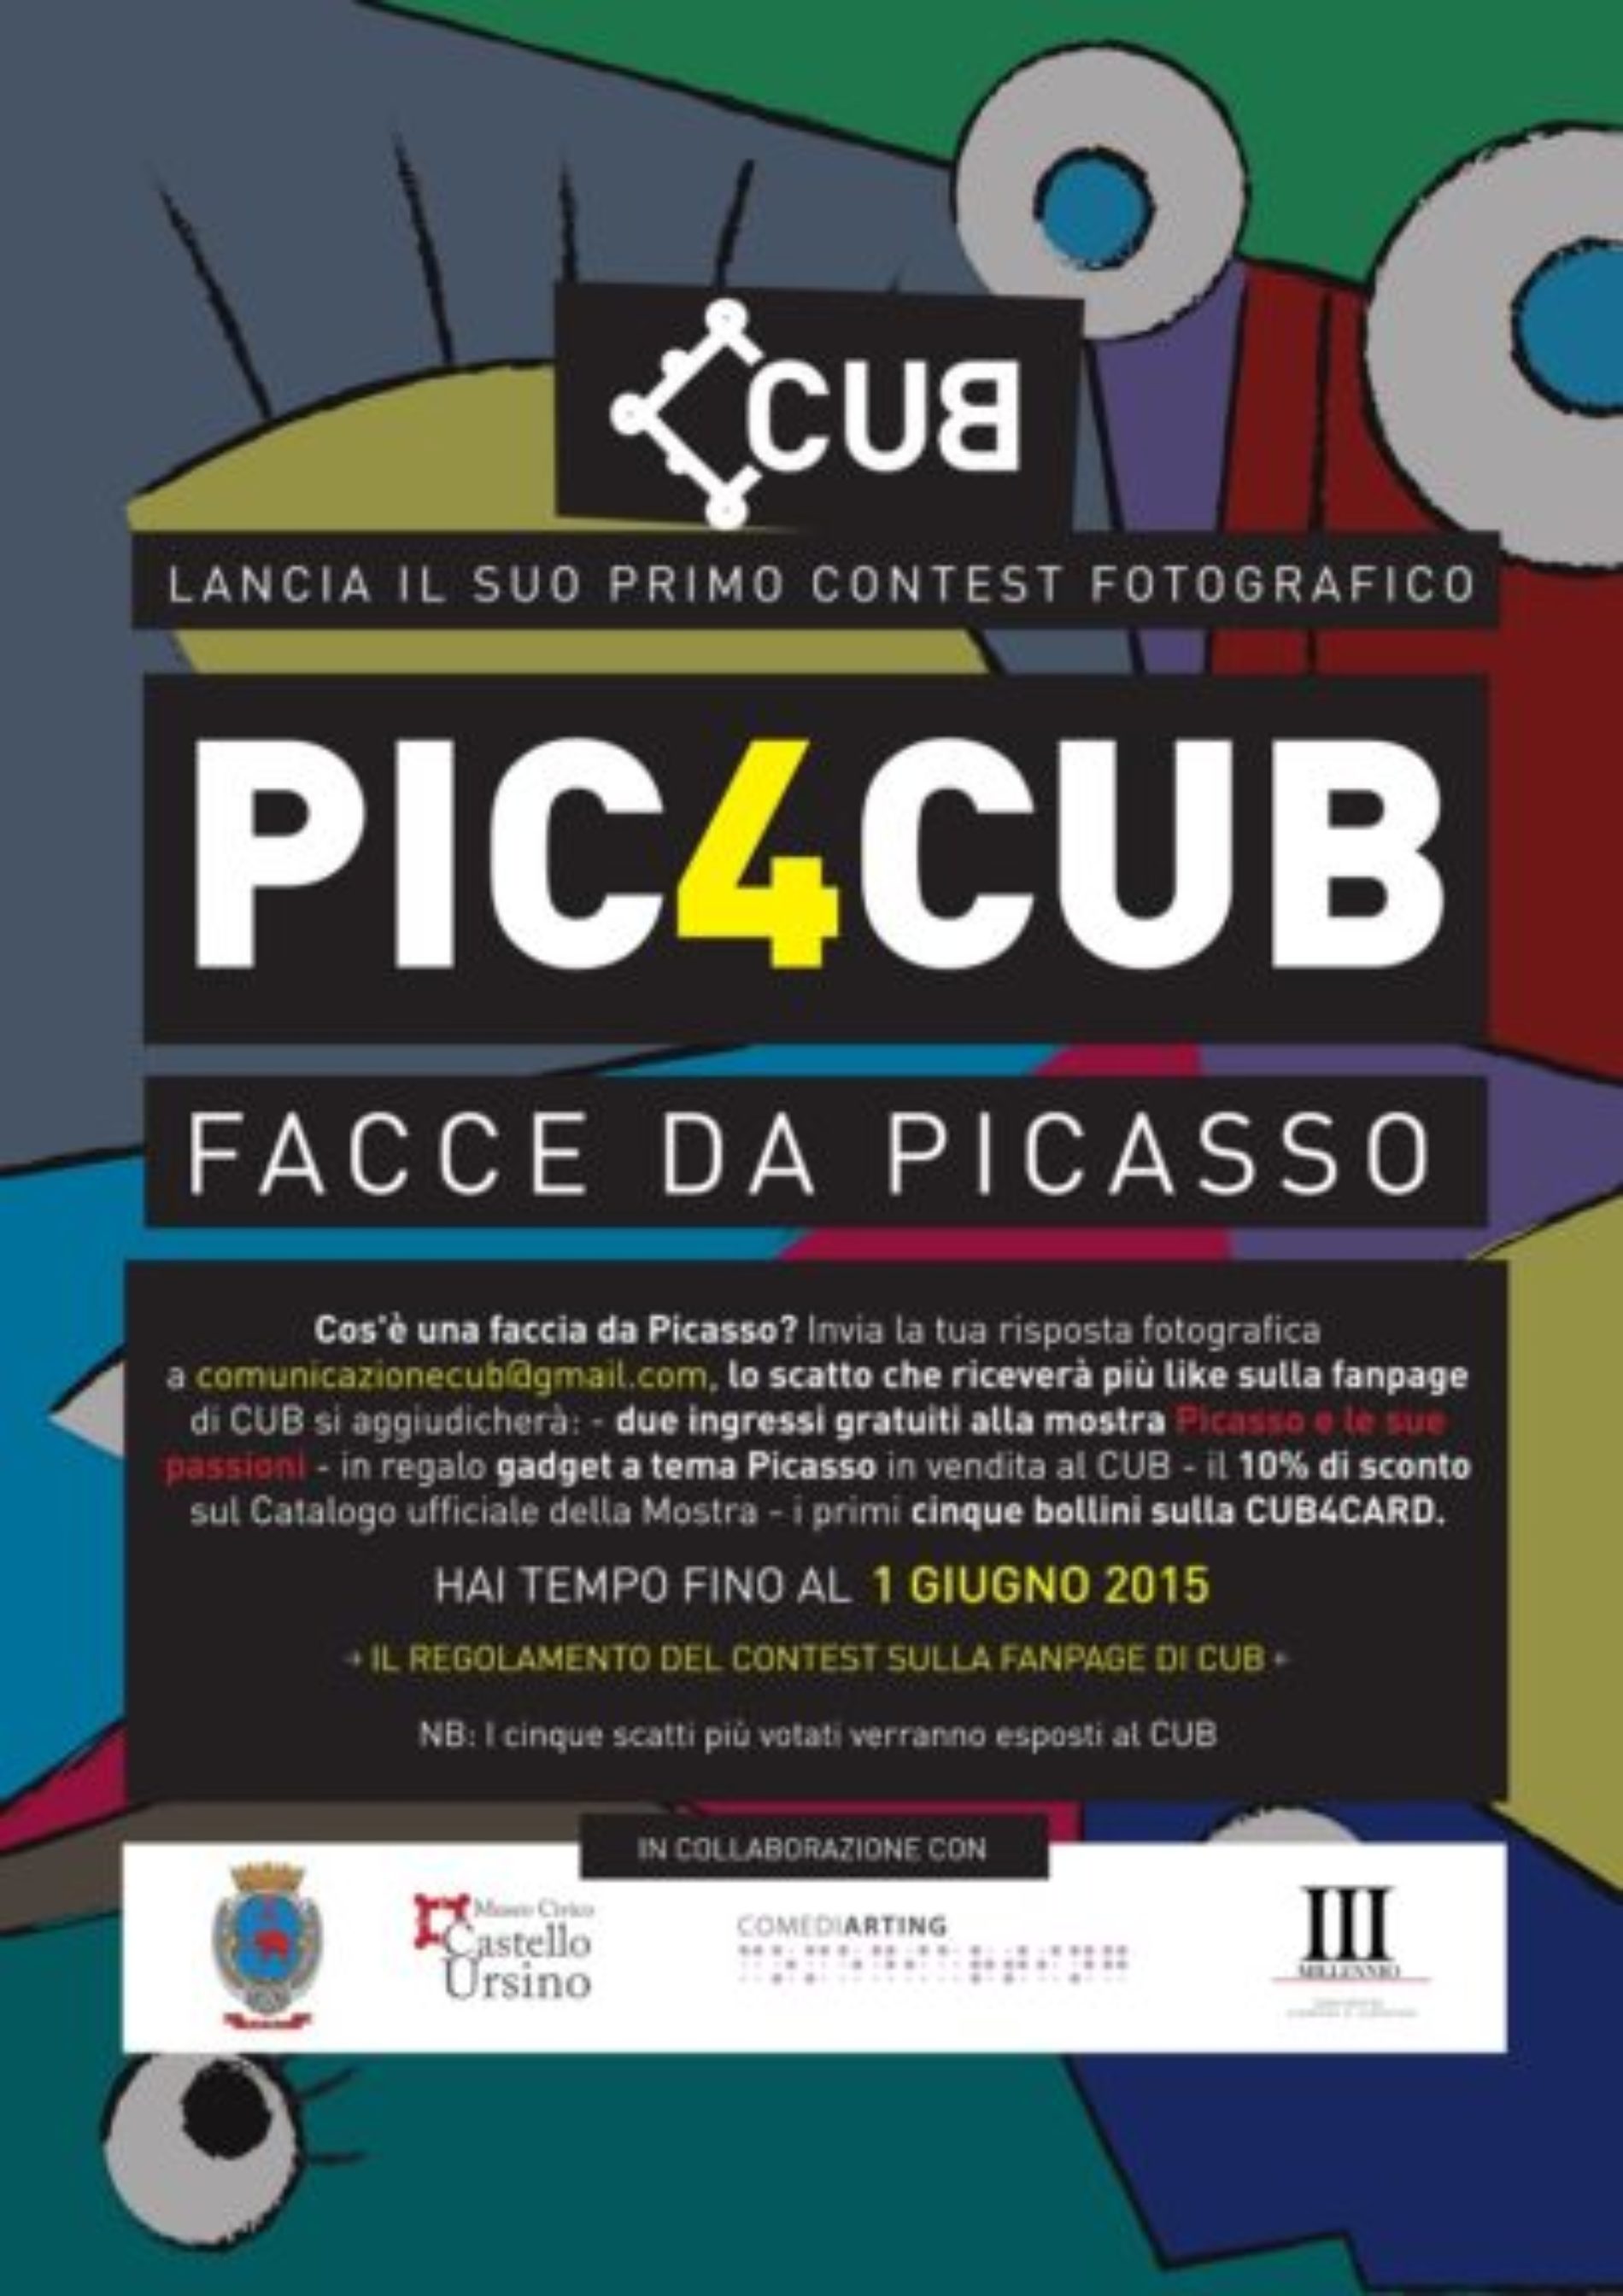 Catania. Castello Ursino Bookshop lancia PIC4CUB – Faccia da Picasso Un contest fotografico che mette in palio 2 biglietti per Picasso e le sue Passioni   